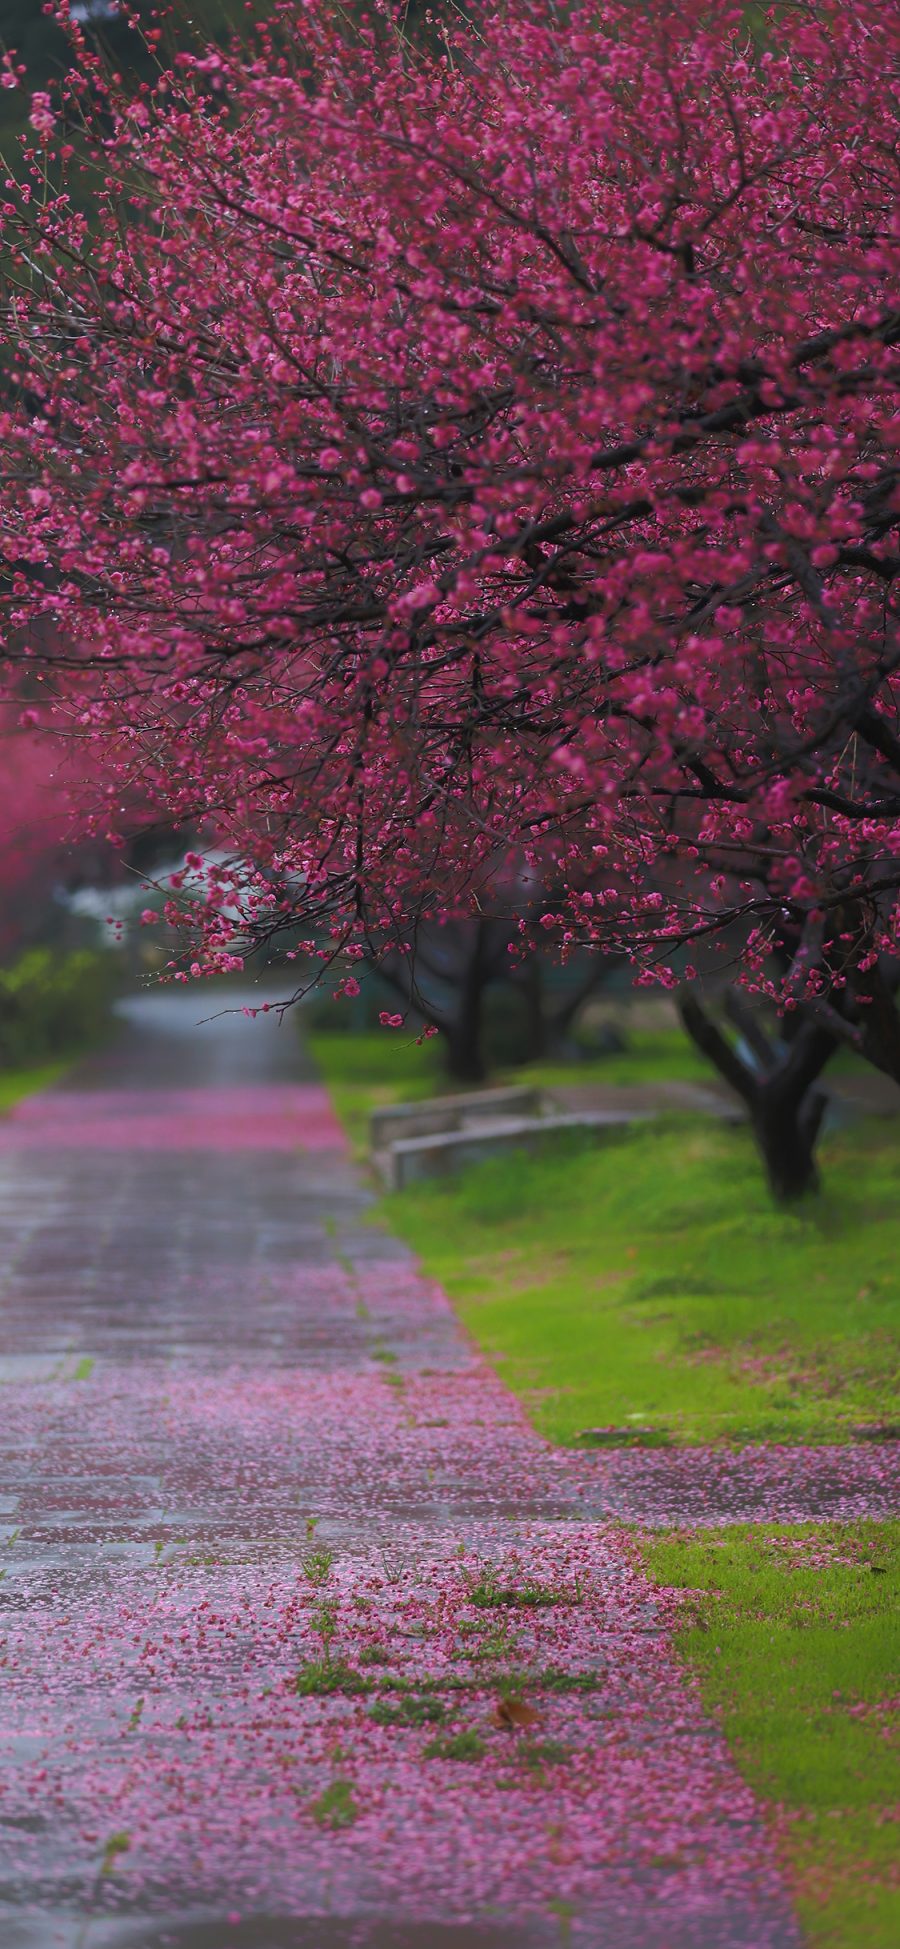 [2436×1125]梅花 道路 枚红色 落叶 草坪 唯美 春天 苹果手机壁纸图片